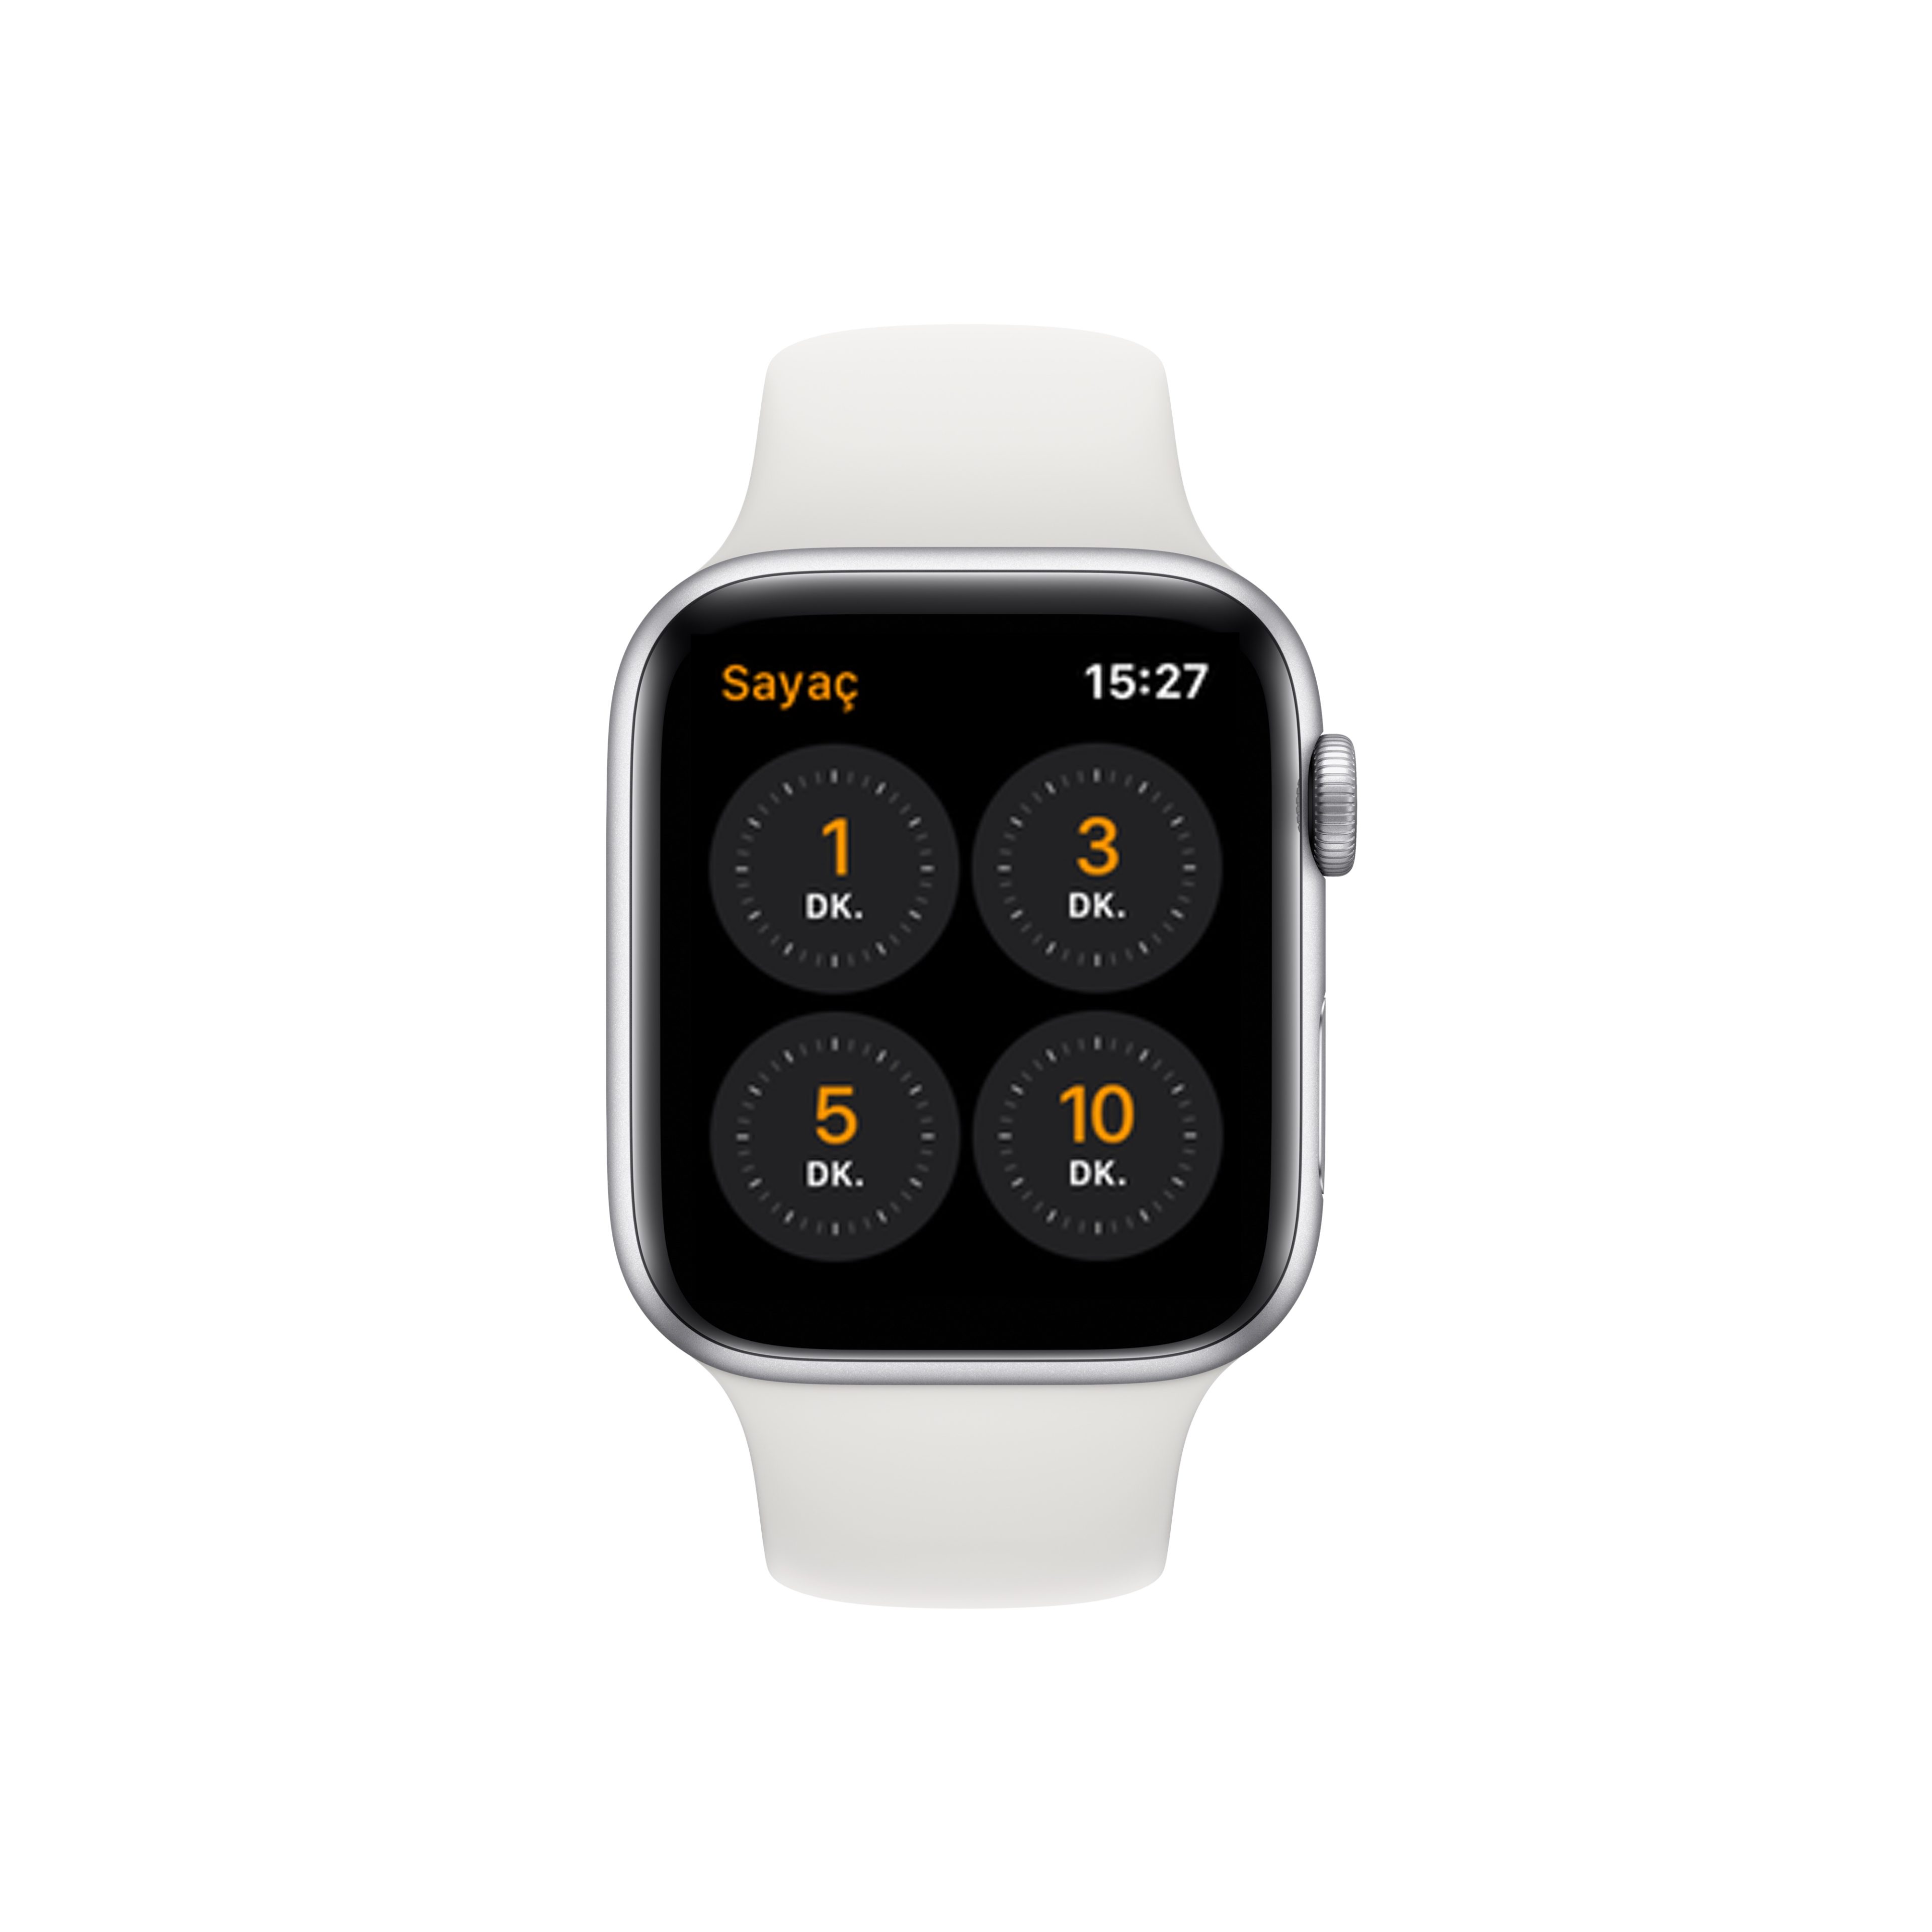 iPhone ve Apple Watch'ta sayaç hızlı şekilde nasıl kurulur?